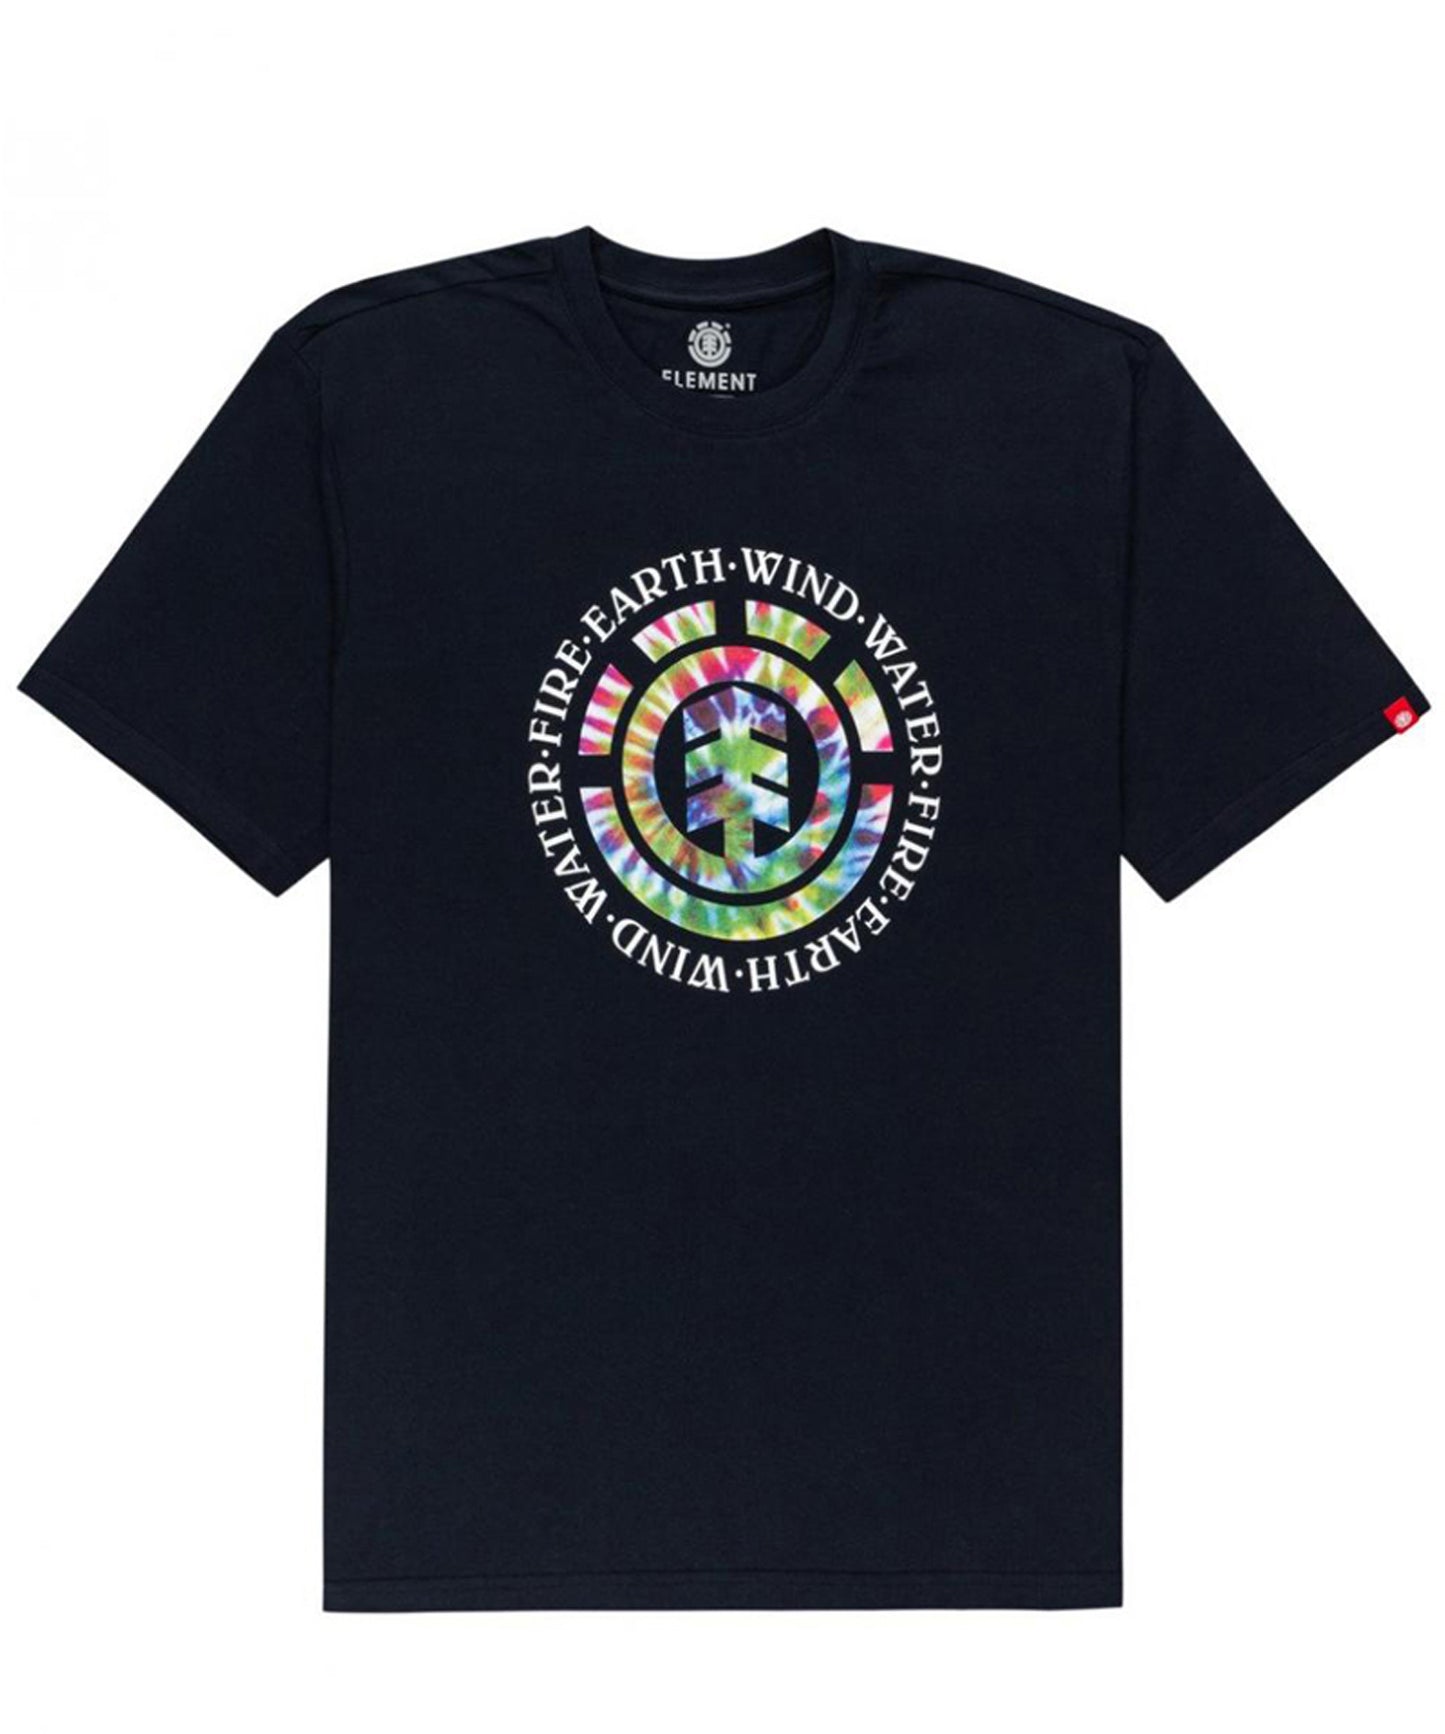 element youth dusky navy-camiseta manga corta para chicos-color negro-algodón 160grs-logo en el pecho.